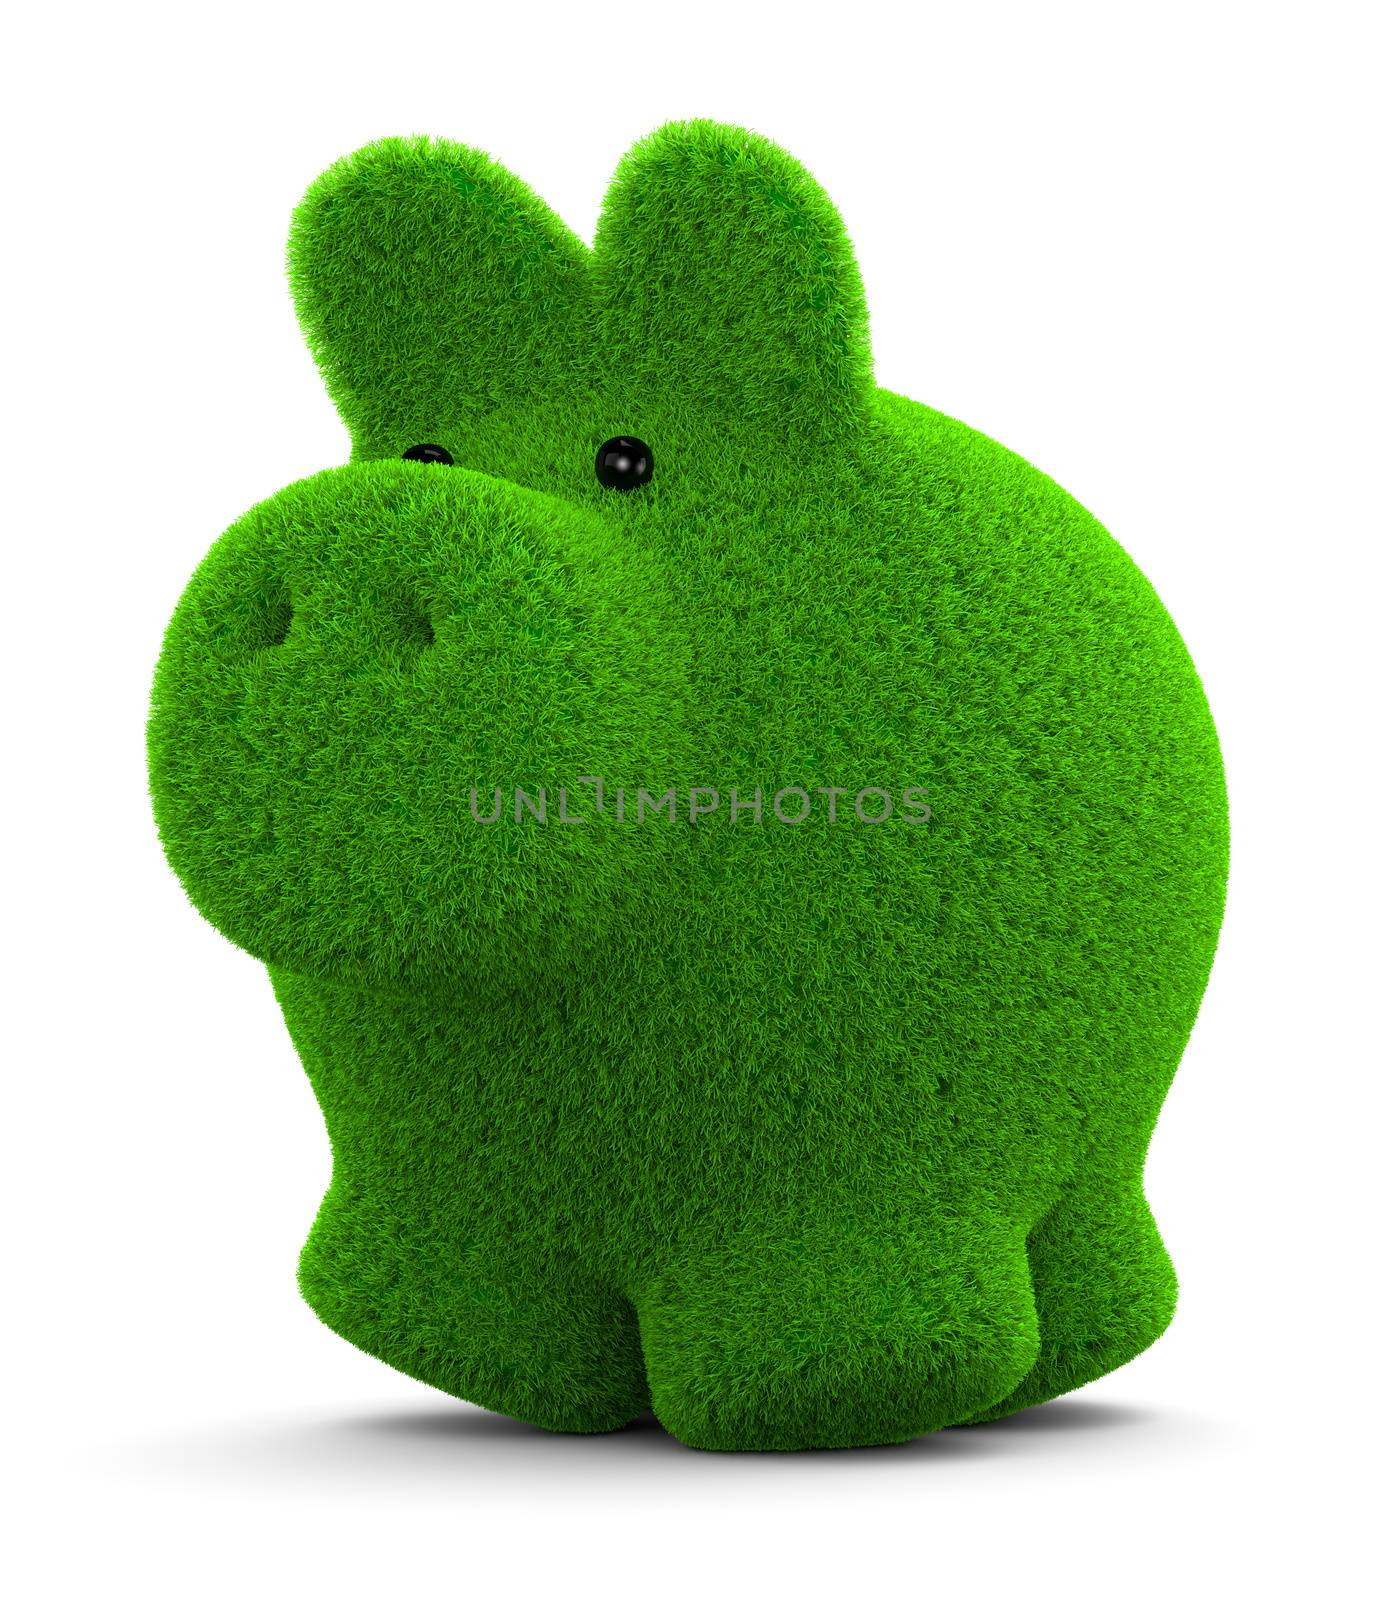 Grass Piggy Bank by make